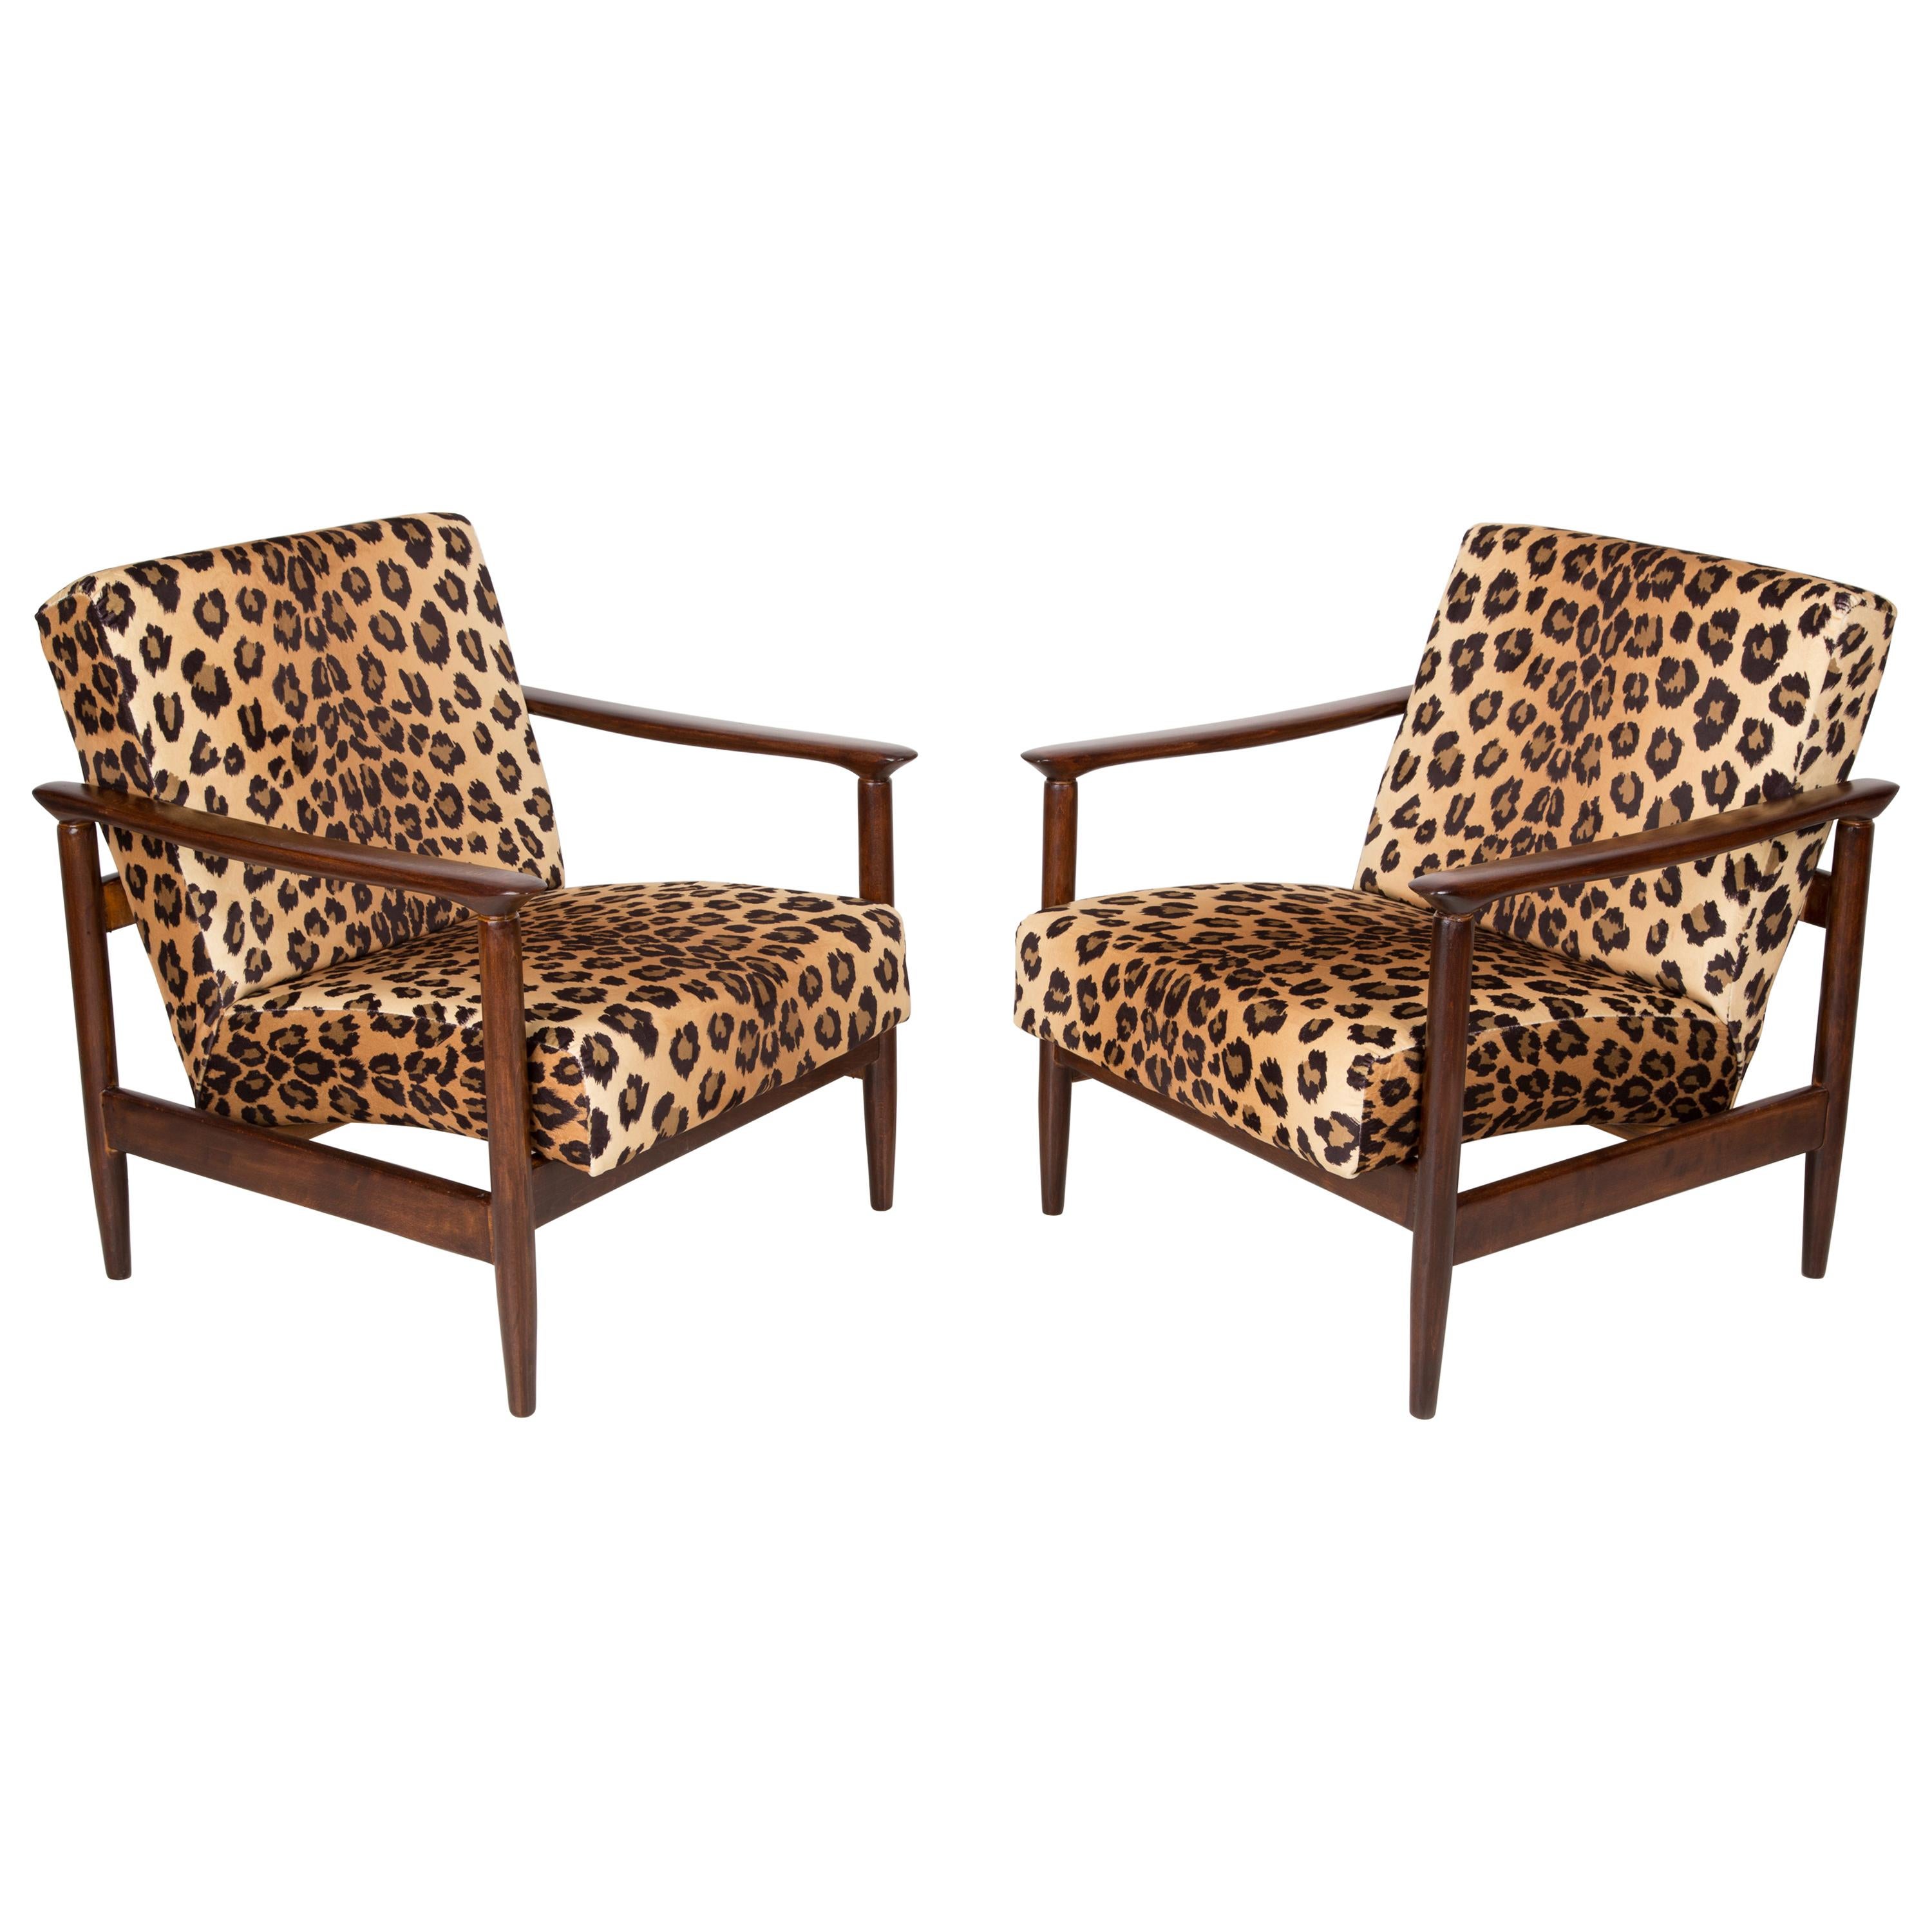 Ein Paar Sessel aus Samt mit Leopardenmuster, Edmund Homa, GFM-142, 1960er Jahre, Polen